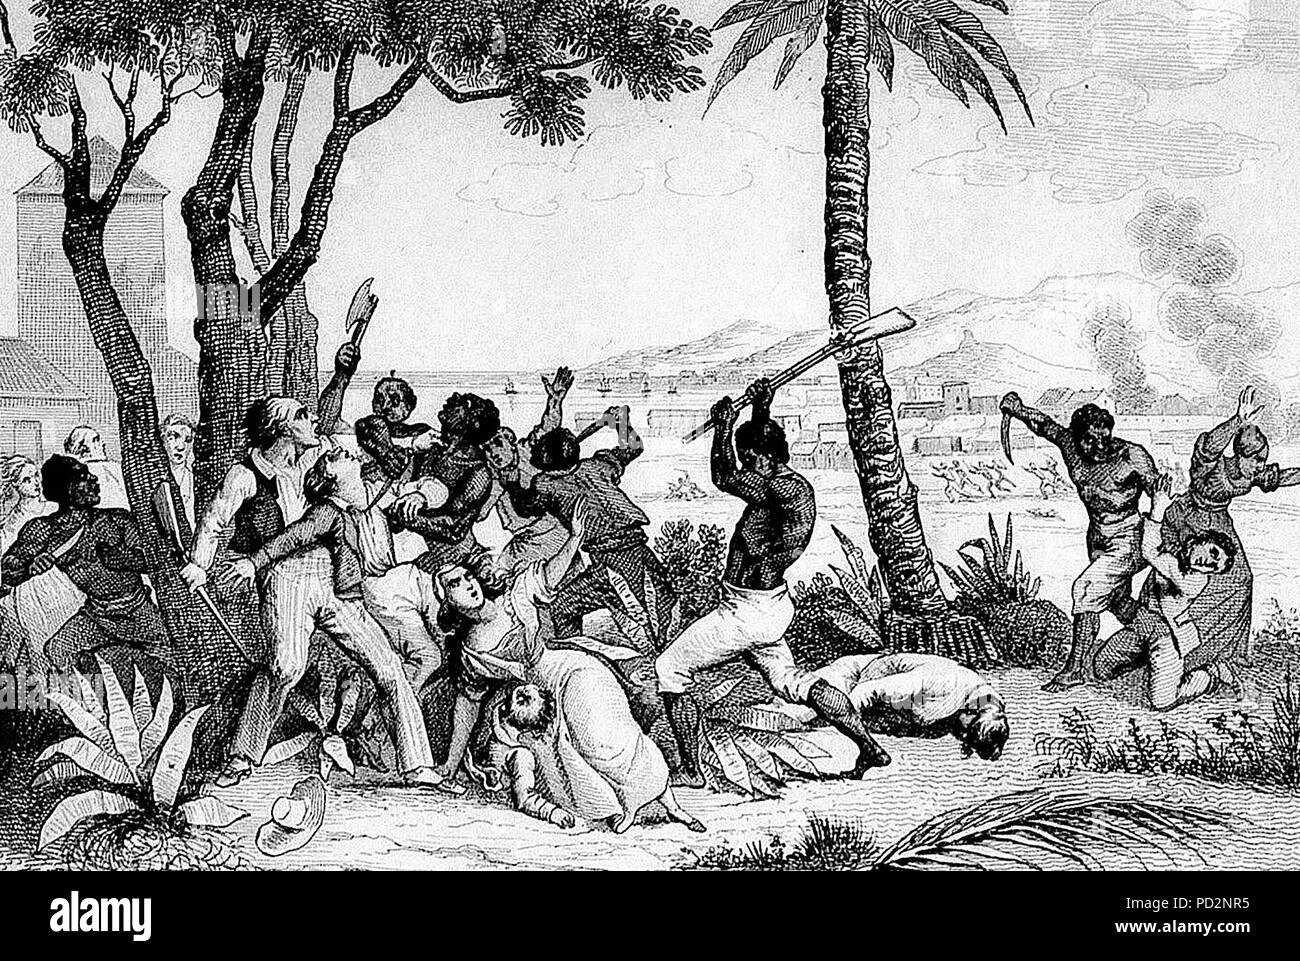 Slave Rebellion von 1791 - Verbrennung der Plaine du Cap-Massaker von Weißen von den Schwarzen". Am 22. August 1791, Sklaven in Brand gesetzt. Plantagen, torched Städte und massakrierten die weiße Bevölkerung. Stockfoto